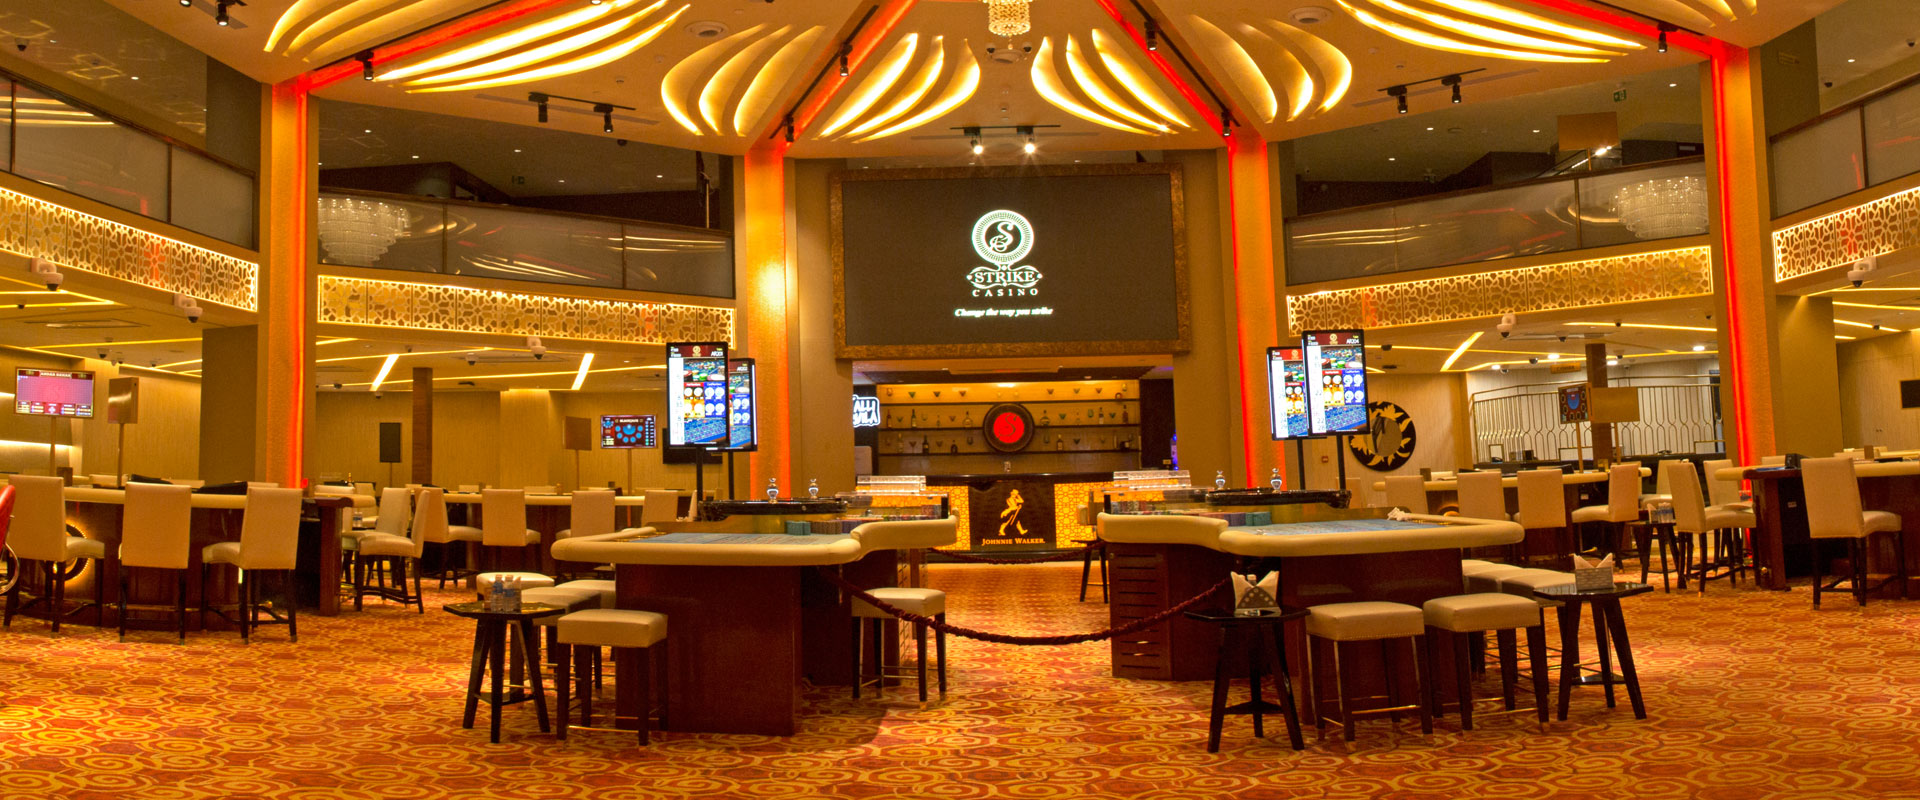 Casino Night at Best Casino in India (#Goa) - Best Entertainment in Goa -  Goa Nightlife - Goa Casino - YouTube